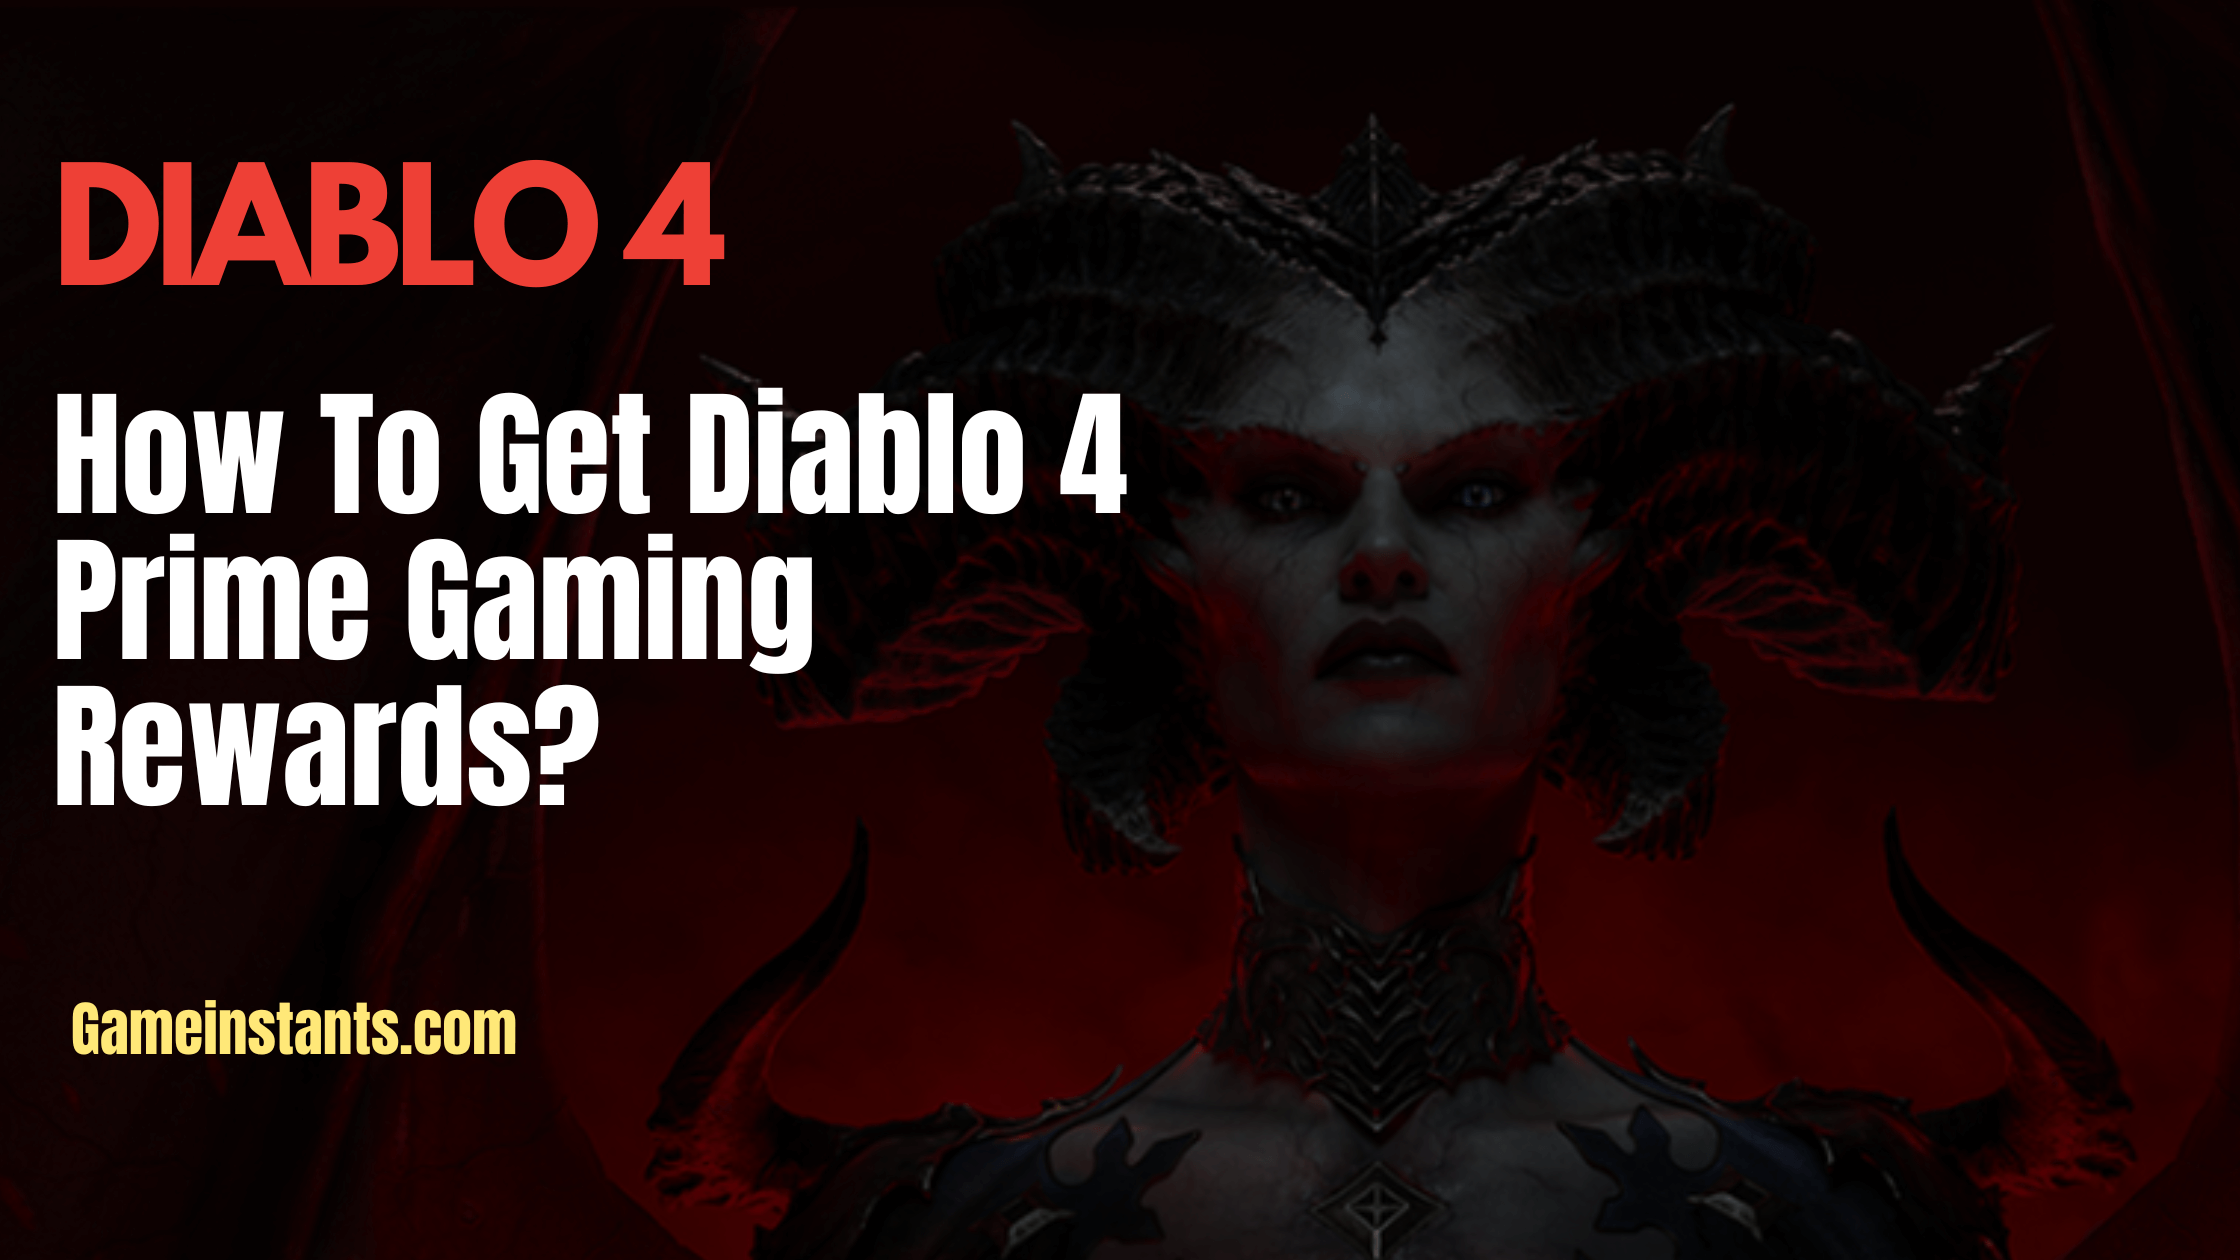 Diablo 4 Prime Gaming Rewards